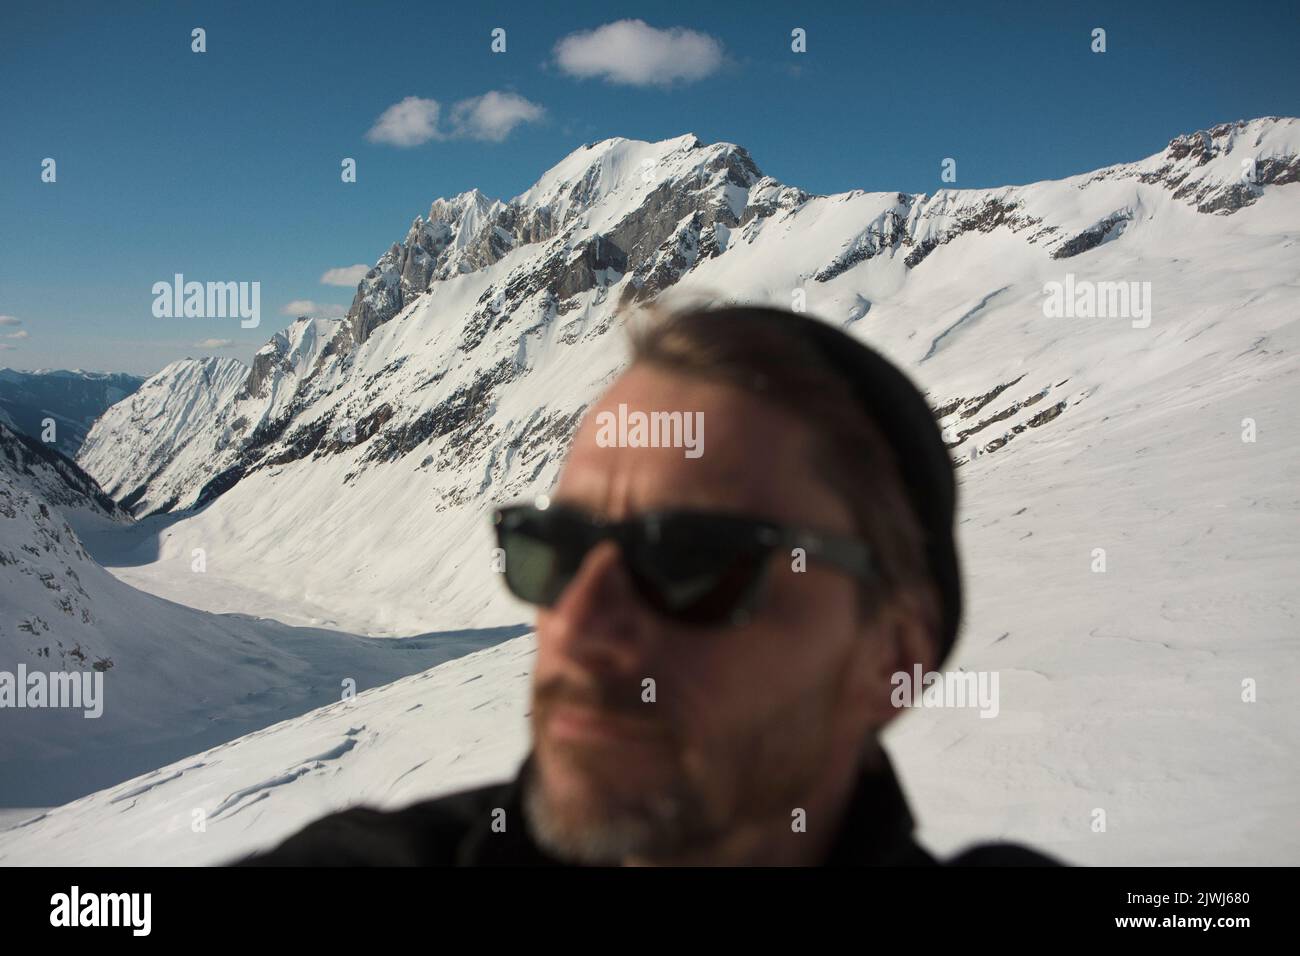 Homme dans des lunettes de soleil sur une montagne ensoleillée et enneigée, Selkirk Mountains, Canada Banque D'Images